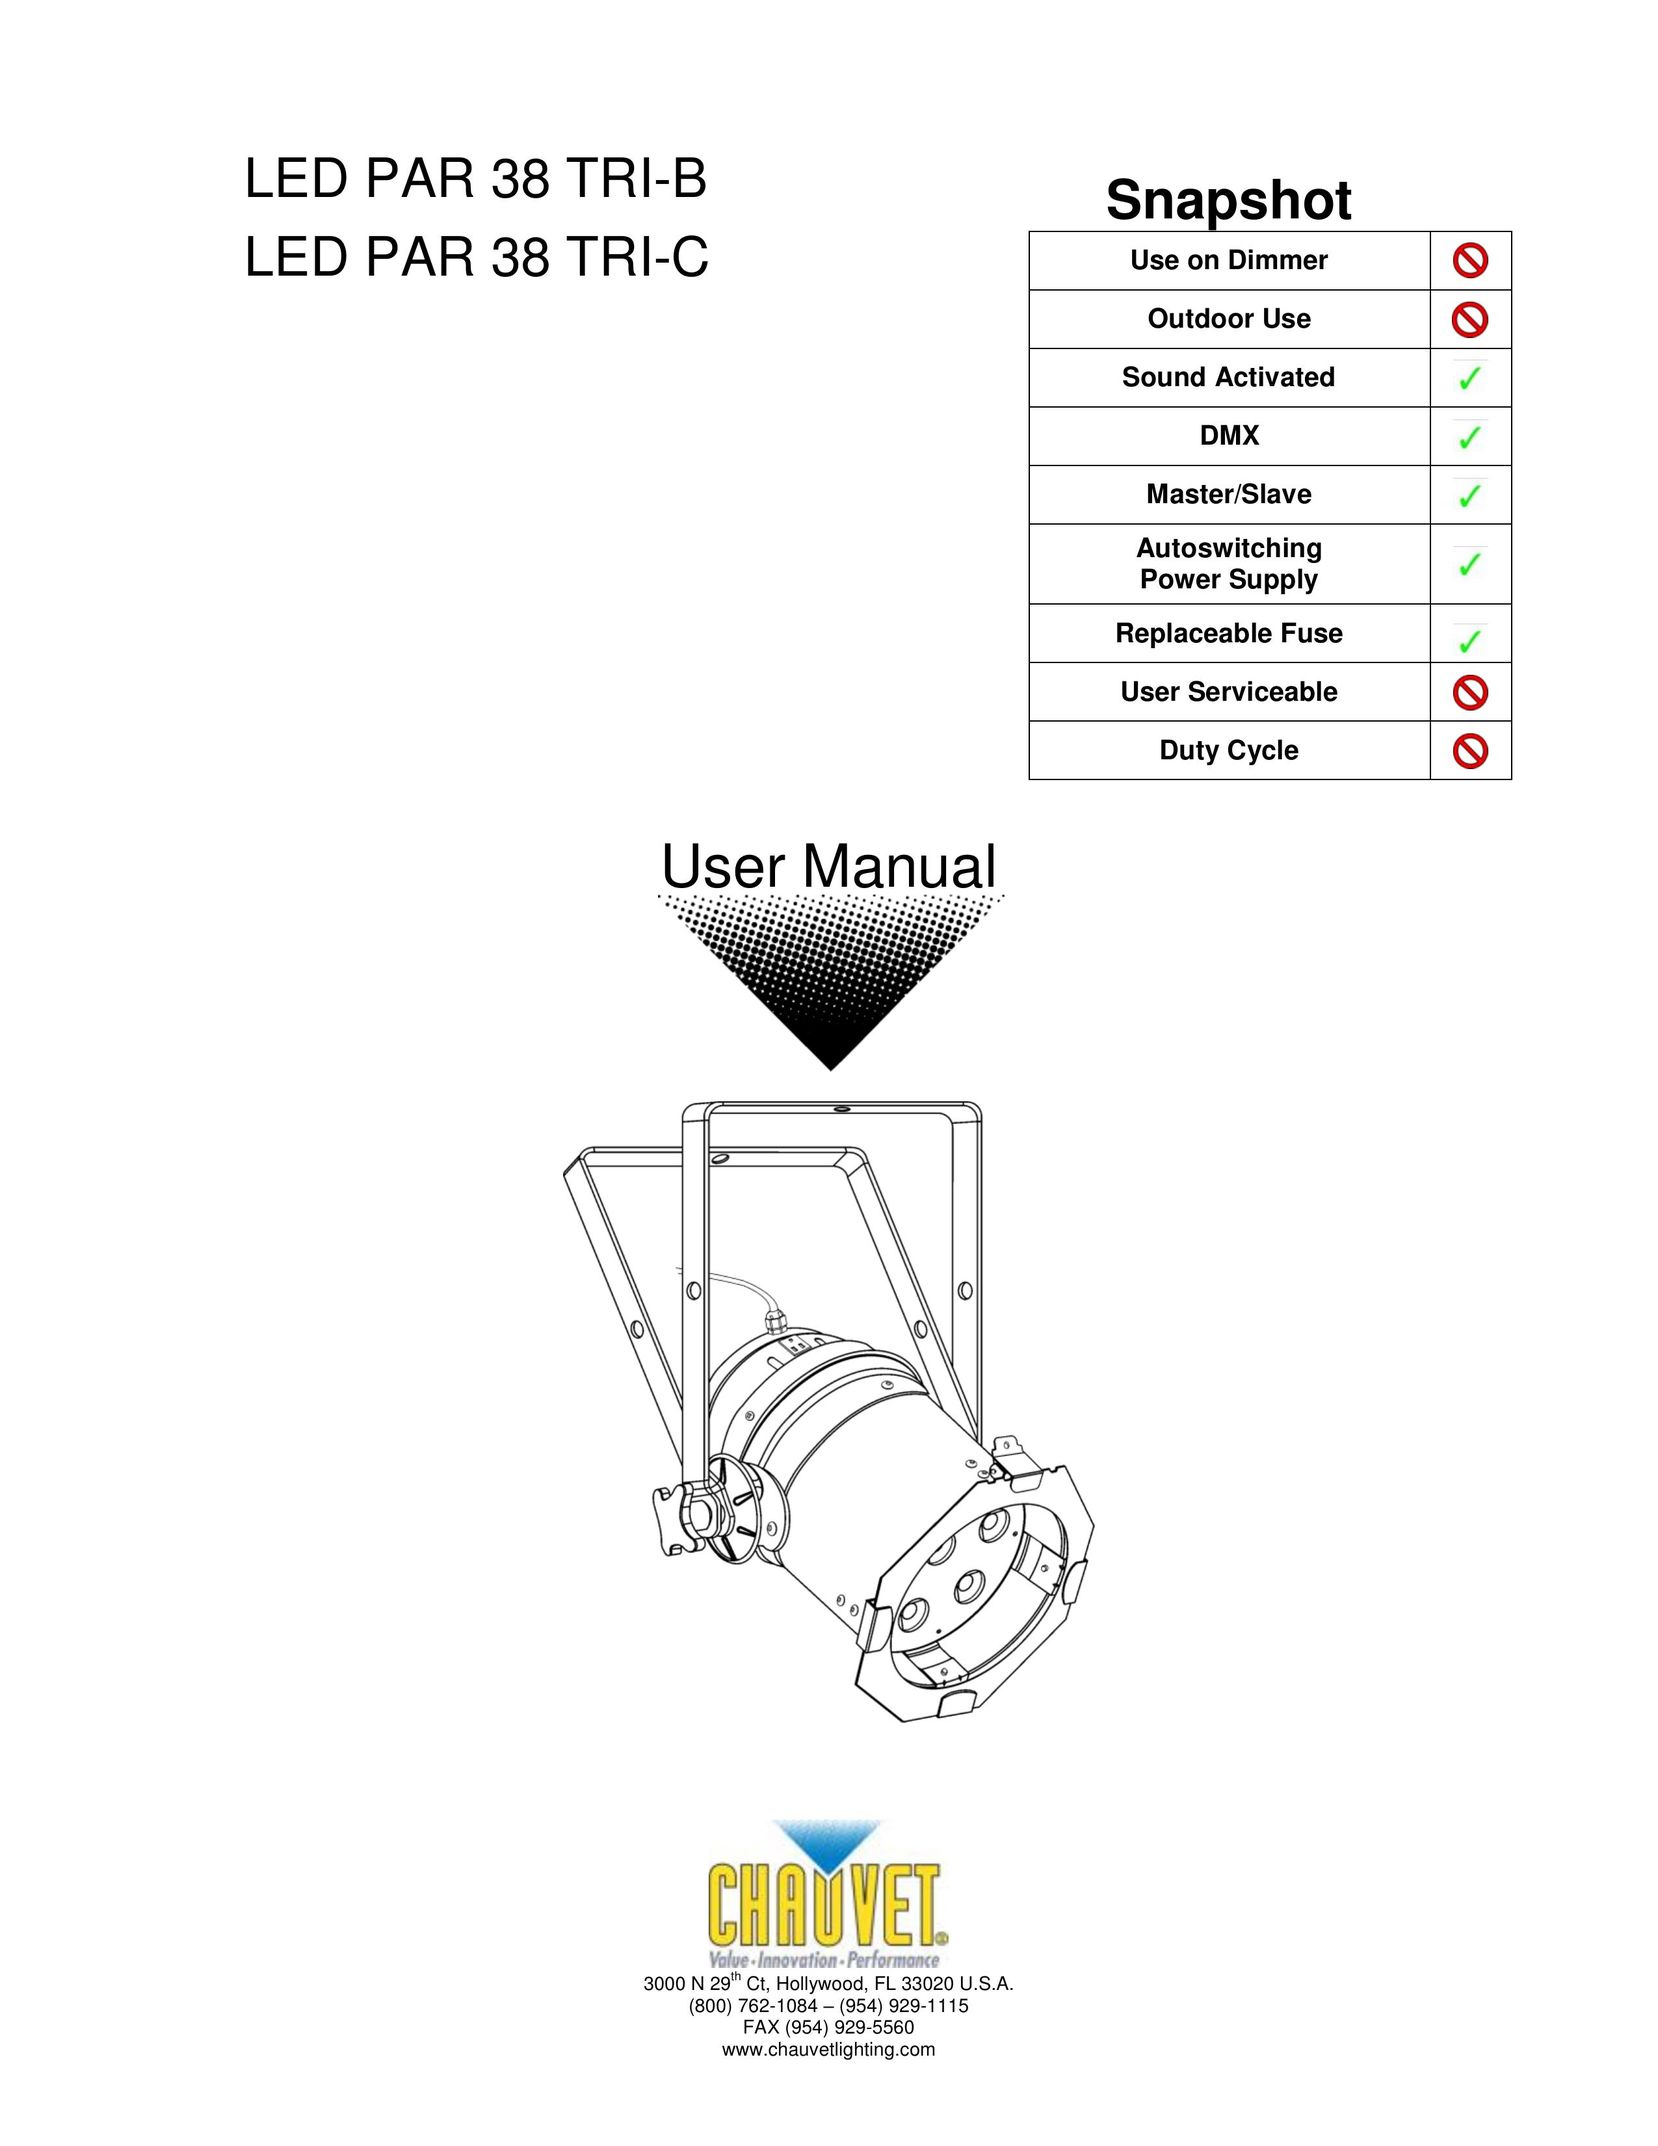 Chauvet LED PAR 38 TRI-B Laminator User Manual